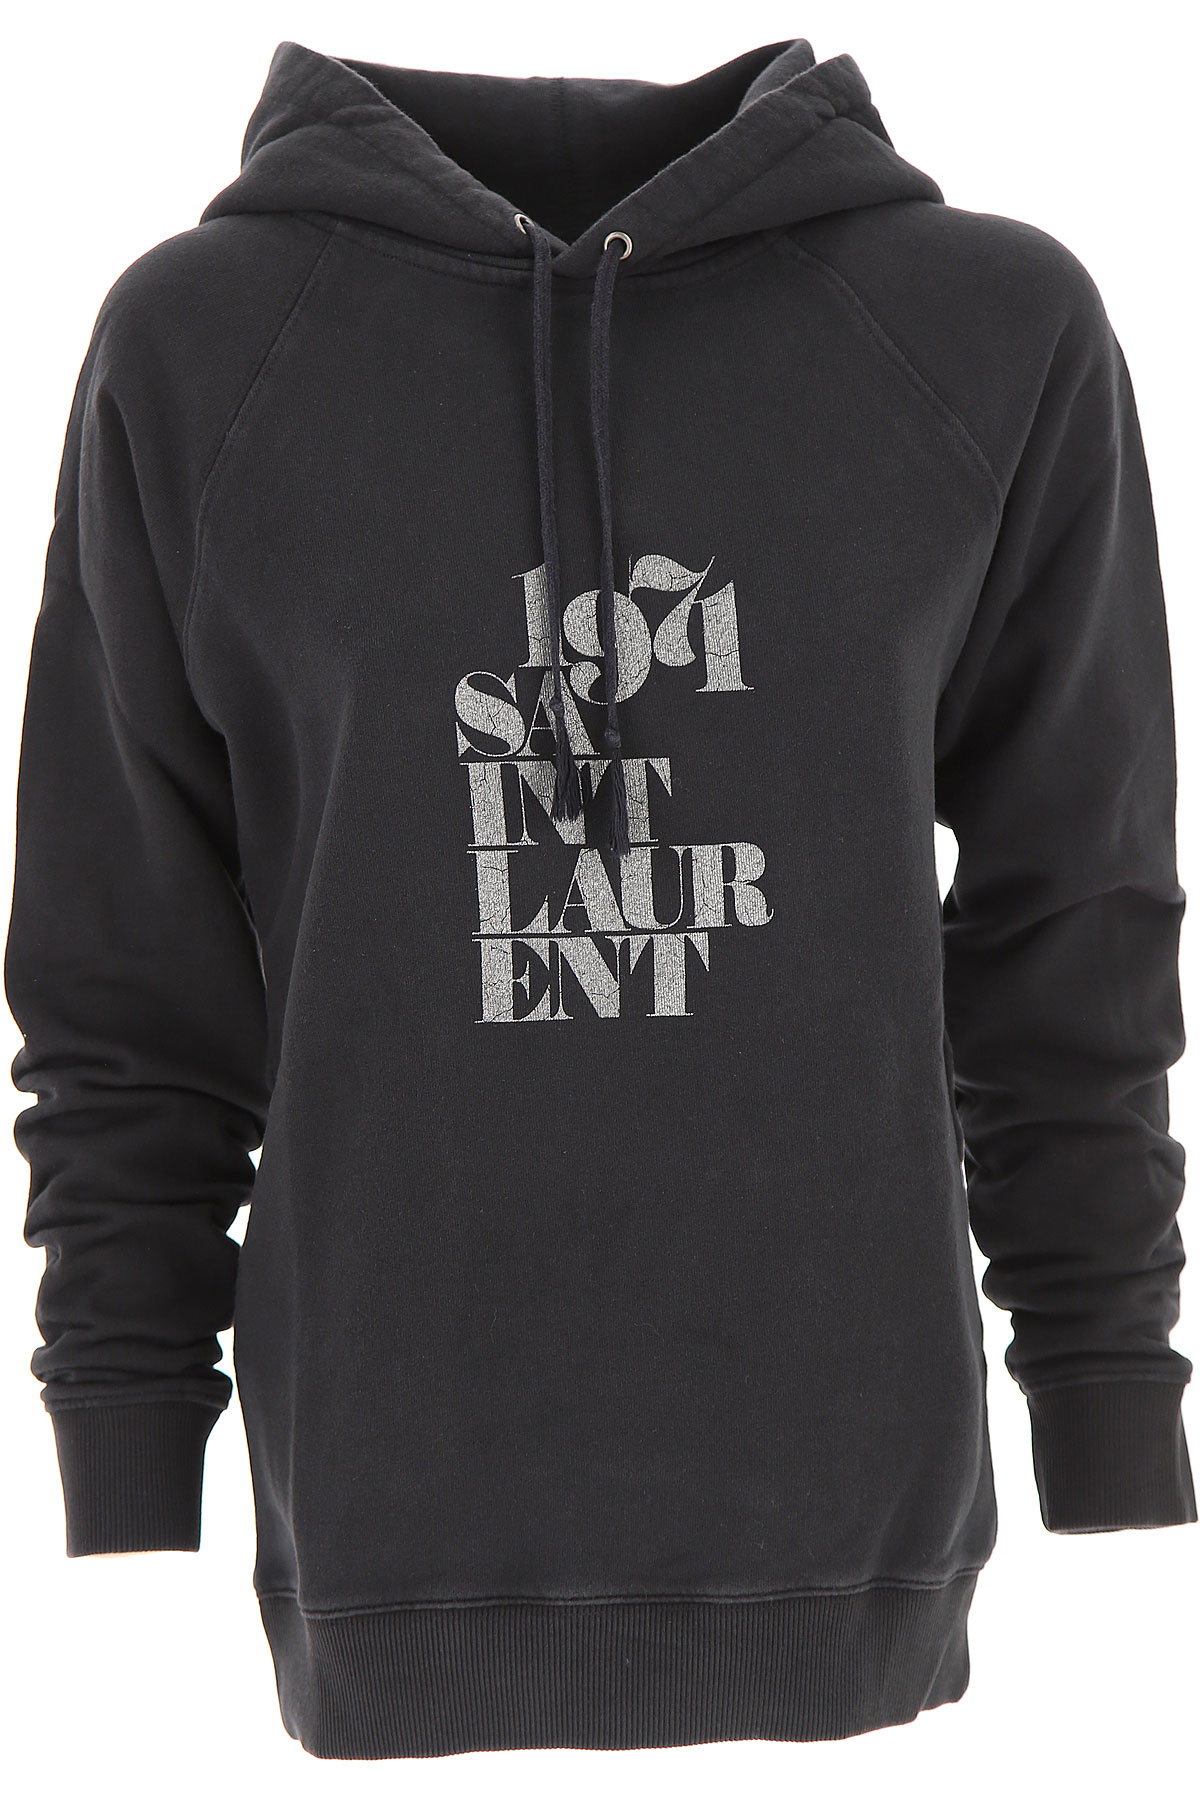 Yves Saint Laurent Sweatshirt für Damen, Kapuzenpulli, Hoodie, Sweats Günstig im Outlet Sale, Schwarz, Baumwolle, 2017, 38 40